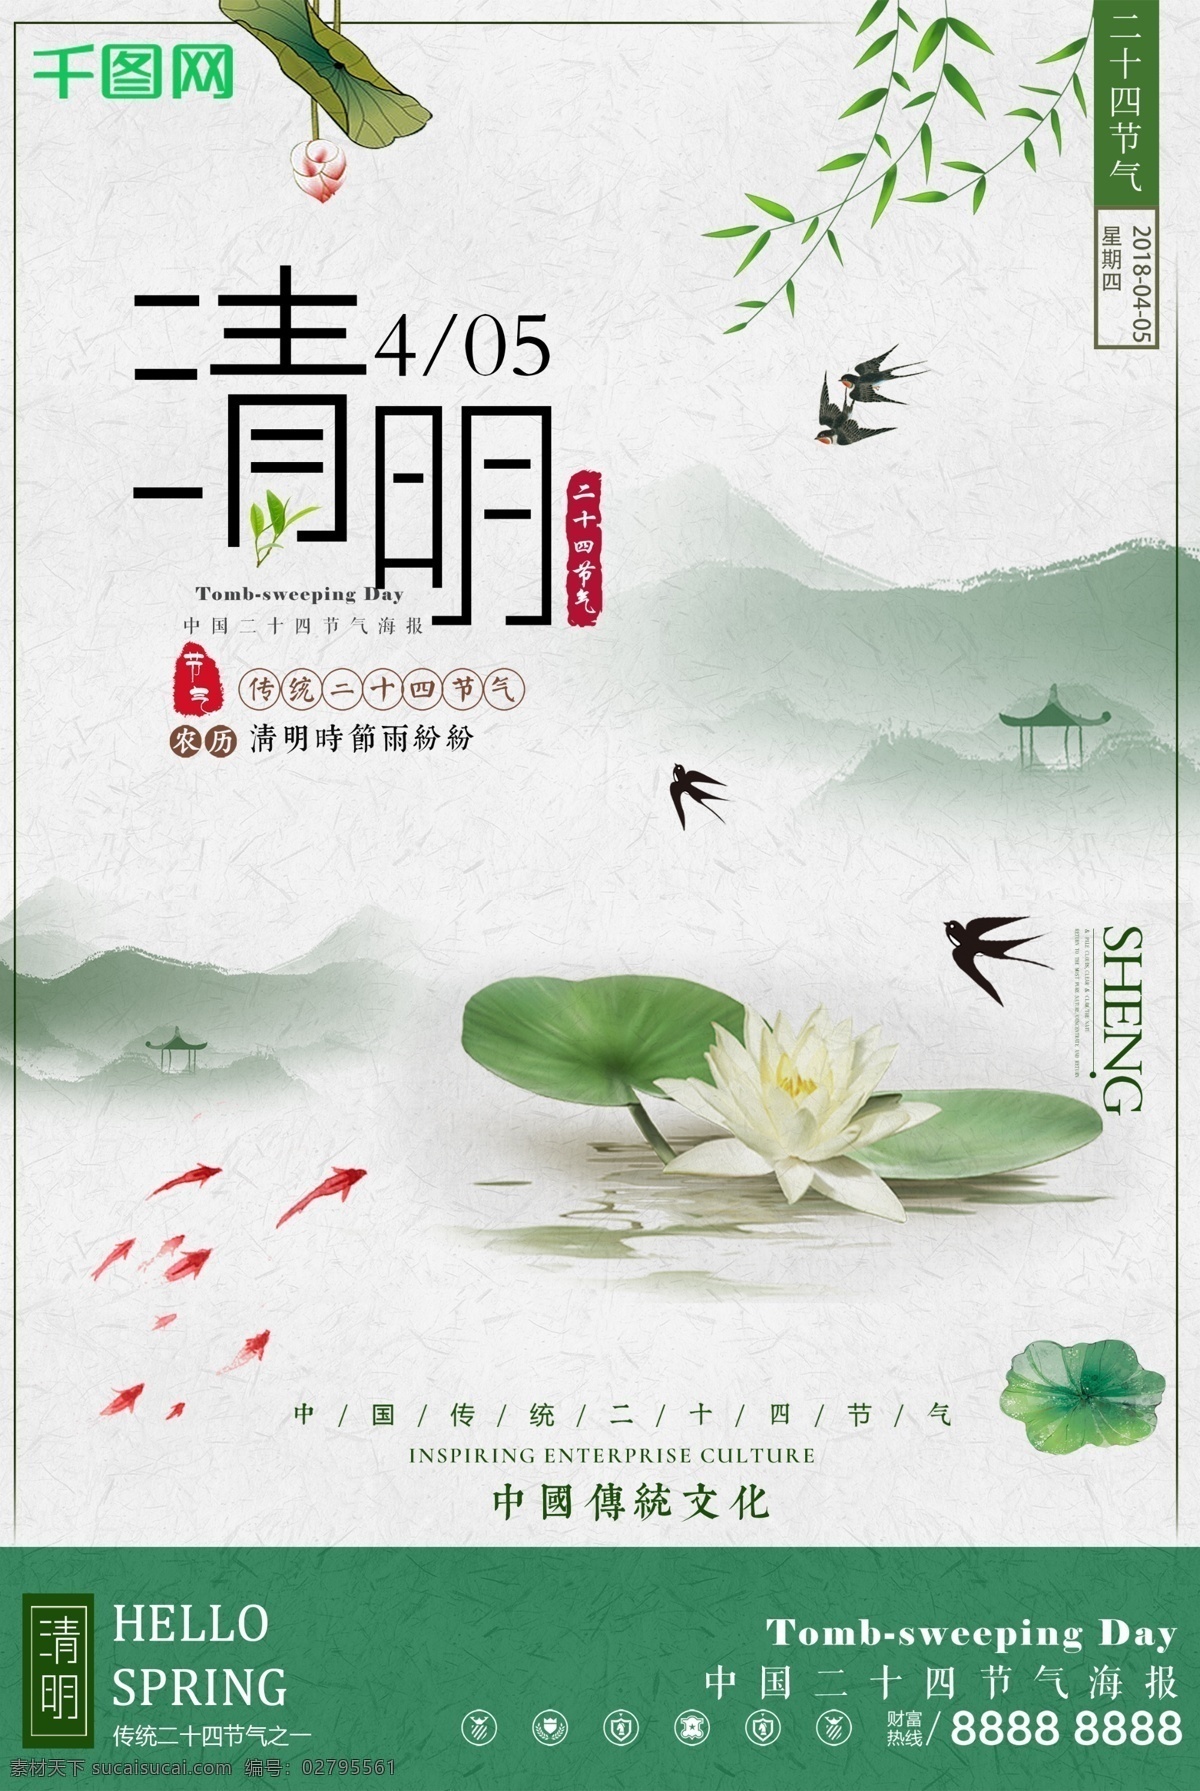 清明节 中国 风 水墨 配 图 海报 中国风 水墨画 荷花 传统文化 农历节气